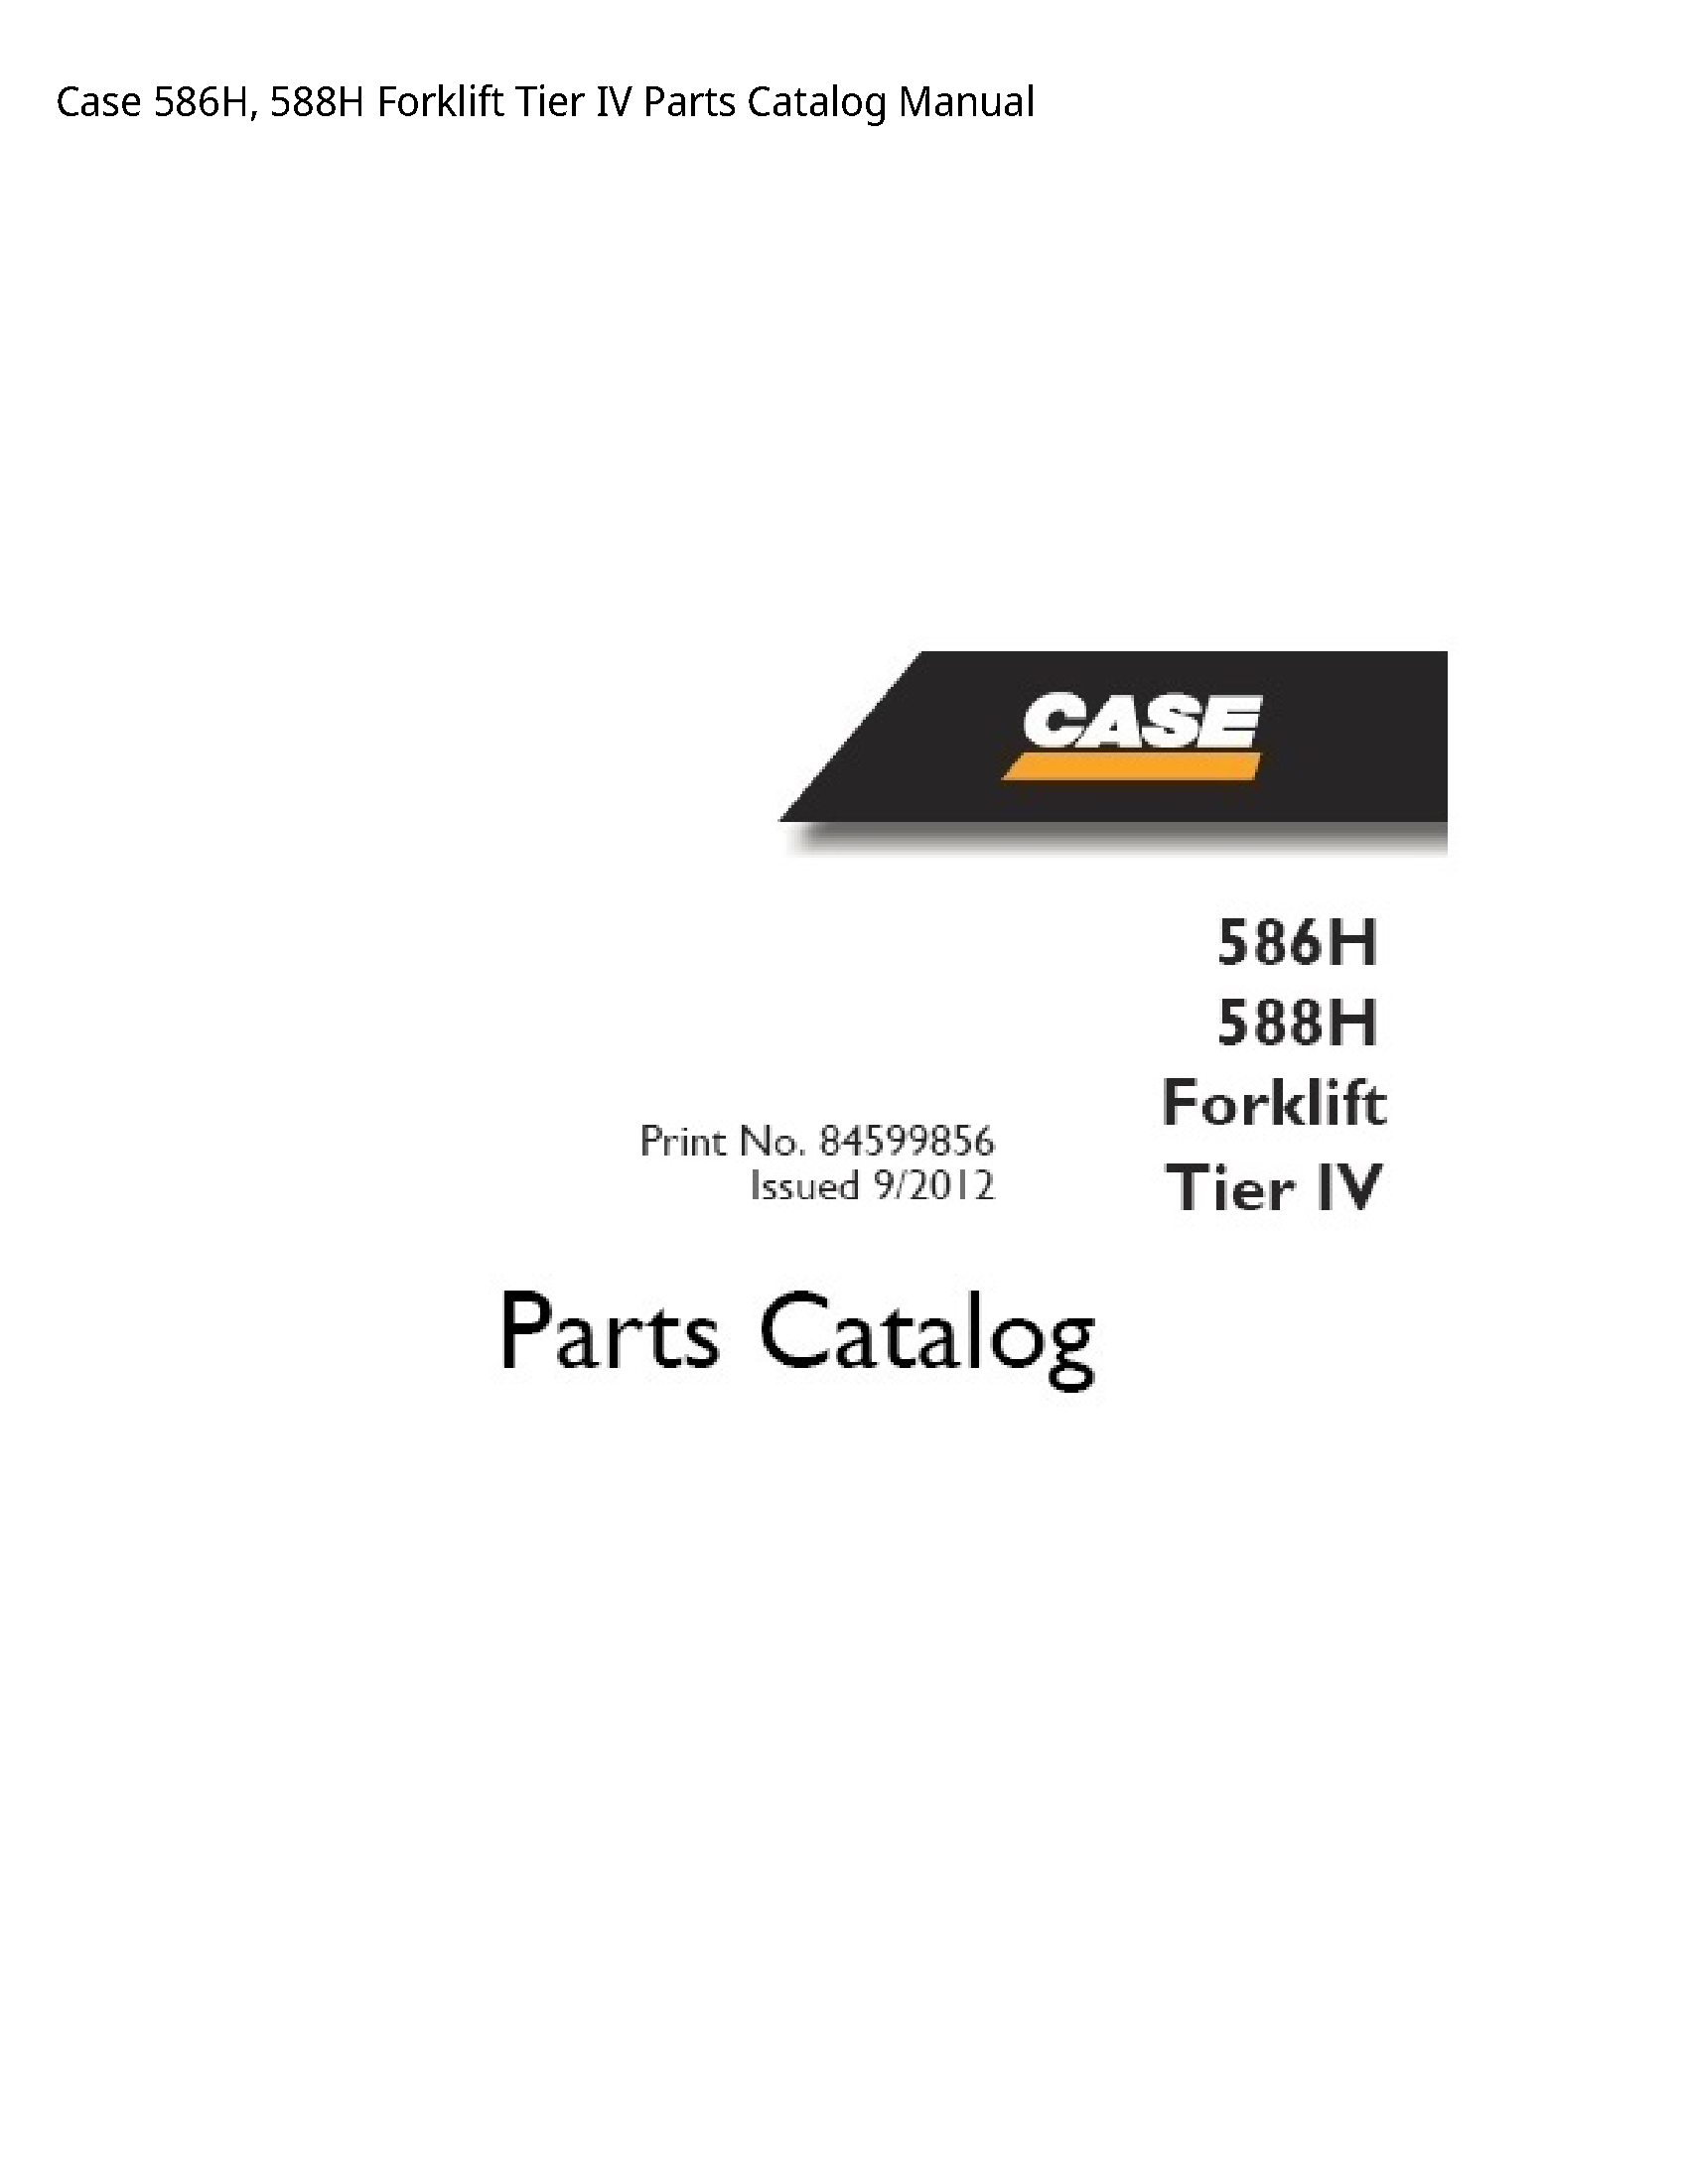 Case/Case IH 586H Forklift Tier IV Parts Catalog manual